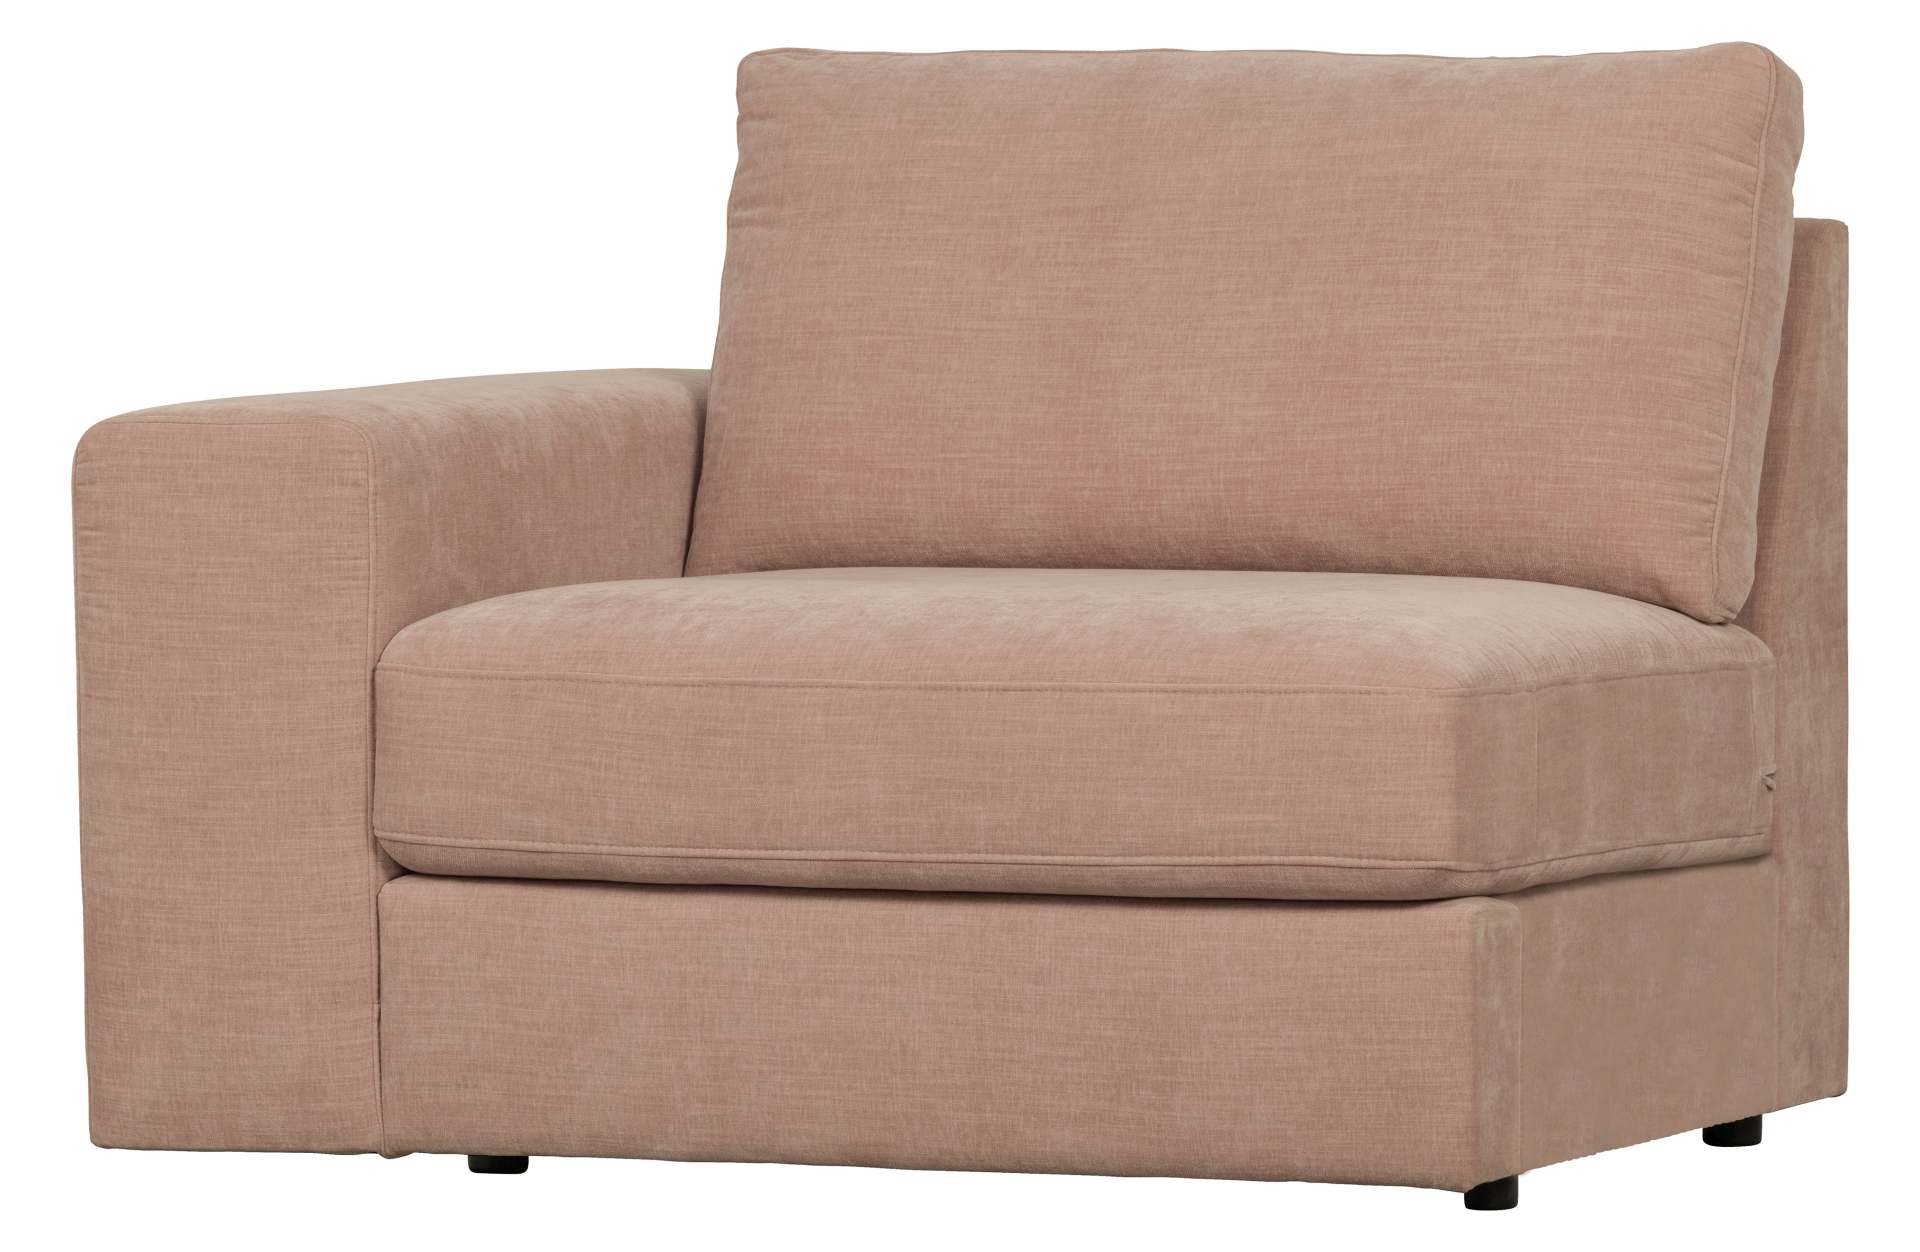 Das Modulsofa Family überzeugt mit seinem modernen Design. Das 1-Seat Element mit der Ausführung Links wurde aus Gewebe-Stoff gefertigt, welcher einen einen rosa Farbton besitzen. Das Gestell ist aus Metall und hat eine schwarze Farbe. Das Element hat ein